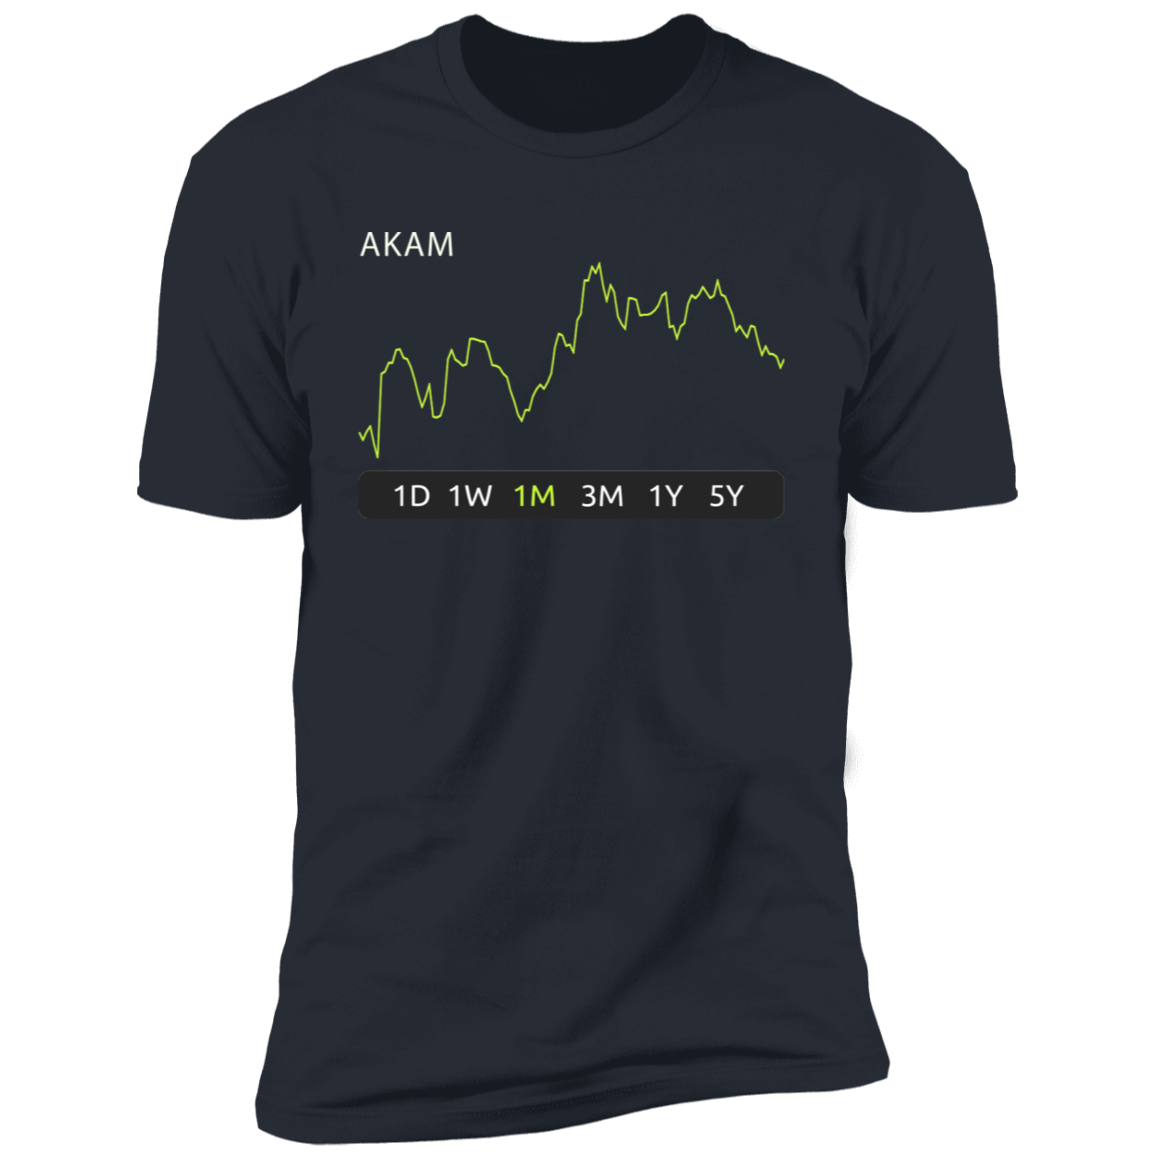 AKAM Stock 1m Premium T-Shirt